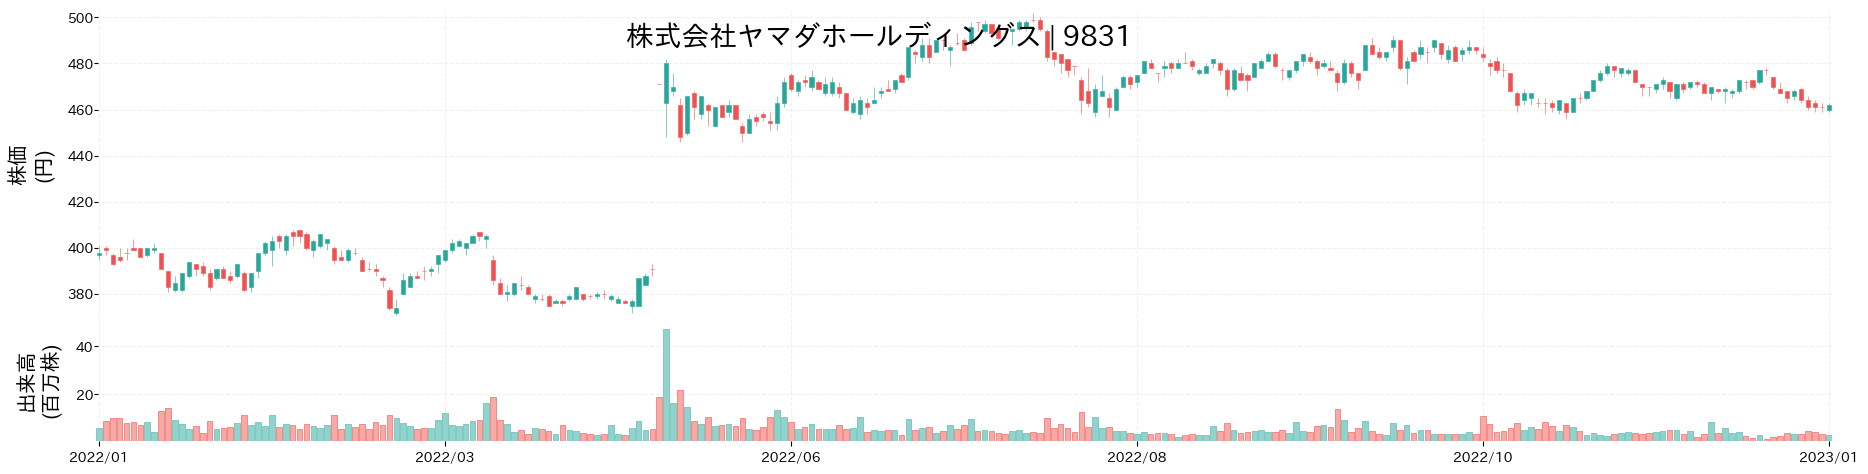 ヤマダホールディングスの株価推移(2022)